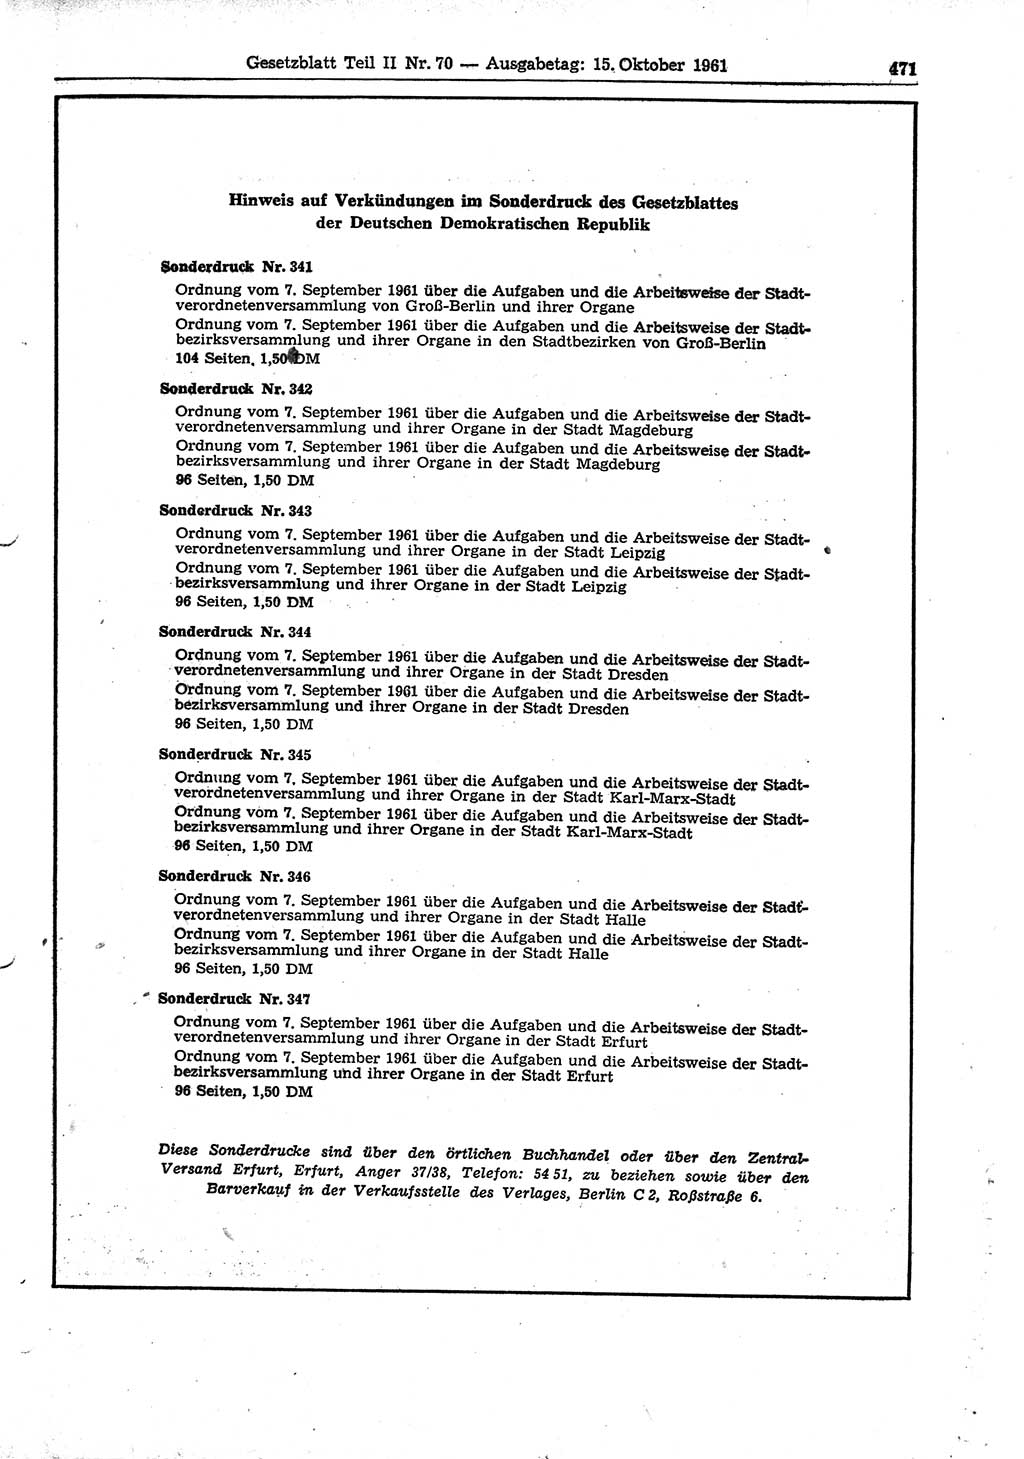 Gesetzblatt (GBl.) der Deutschen Demokratischen Republik (DDR) Teil ⅠⅠ 1961, Seite 471 (GBl. DDR ⅠⅠ 1961, S. 471)